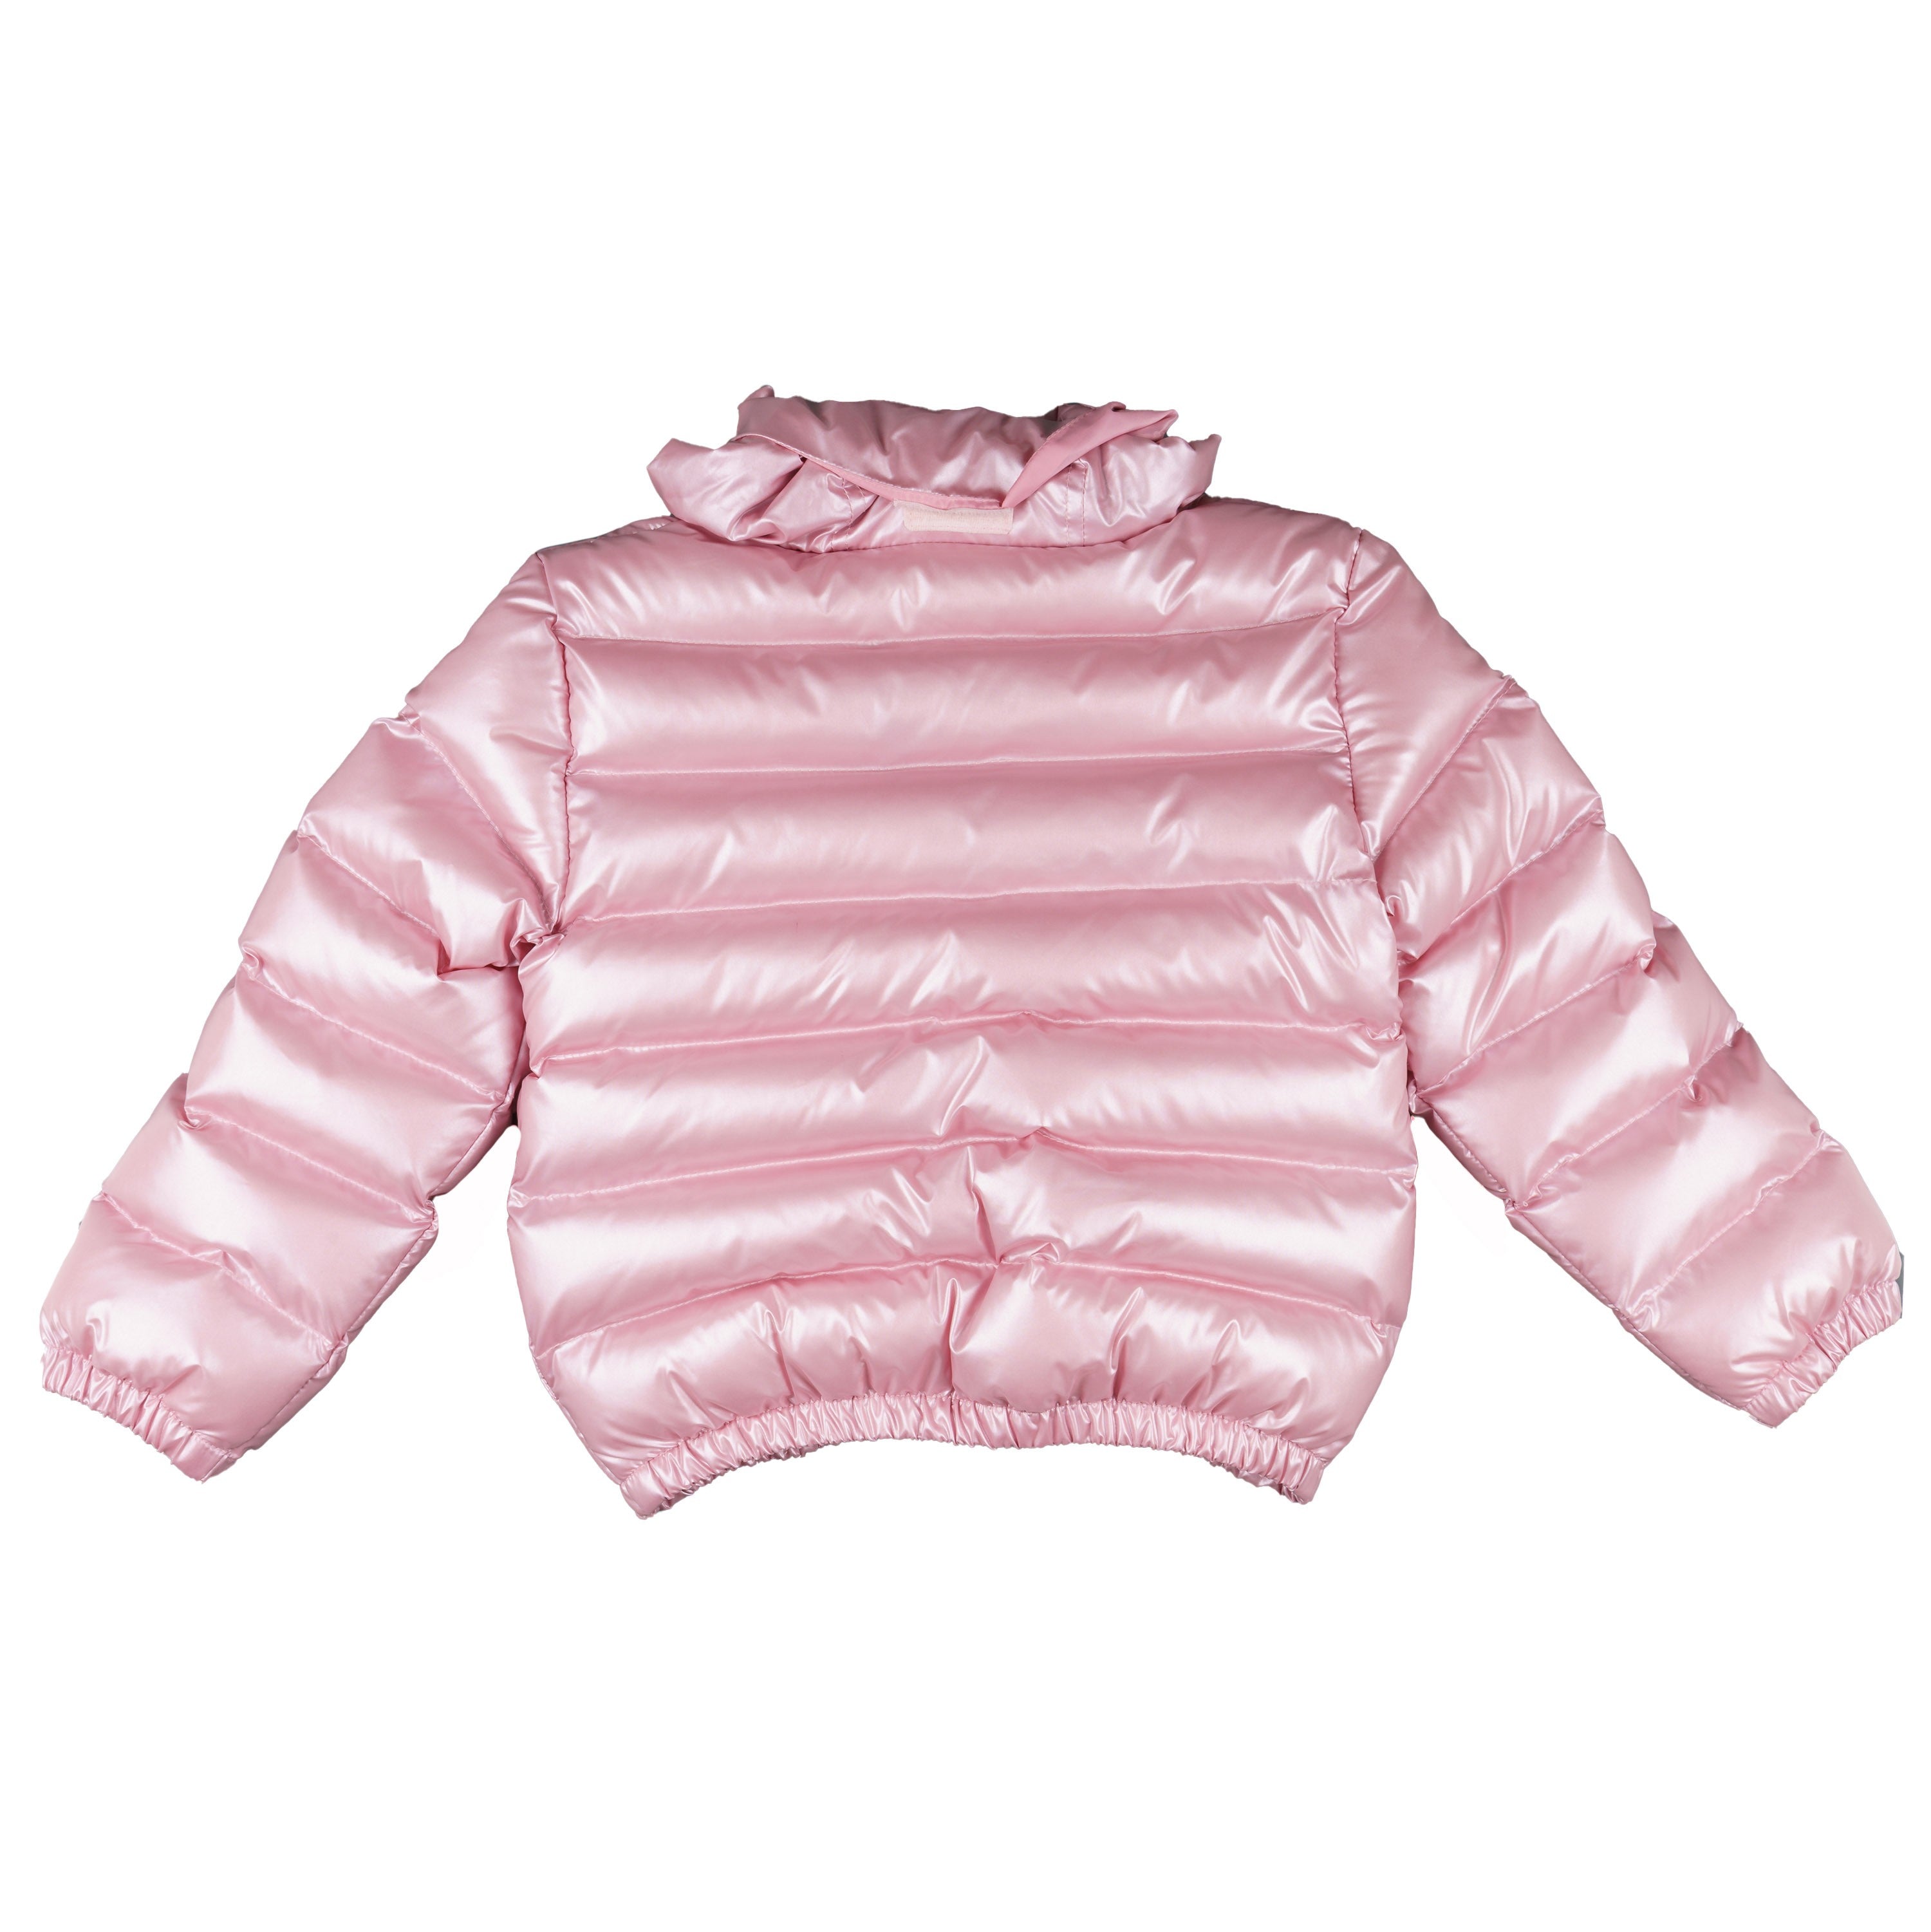 Cazadora acolchada niña rosa metalizado - Moda Infantil